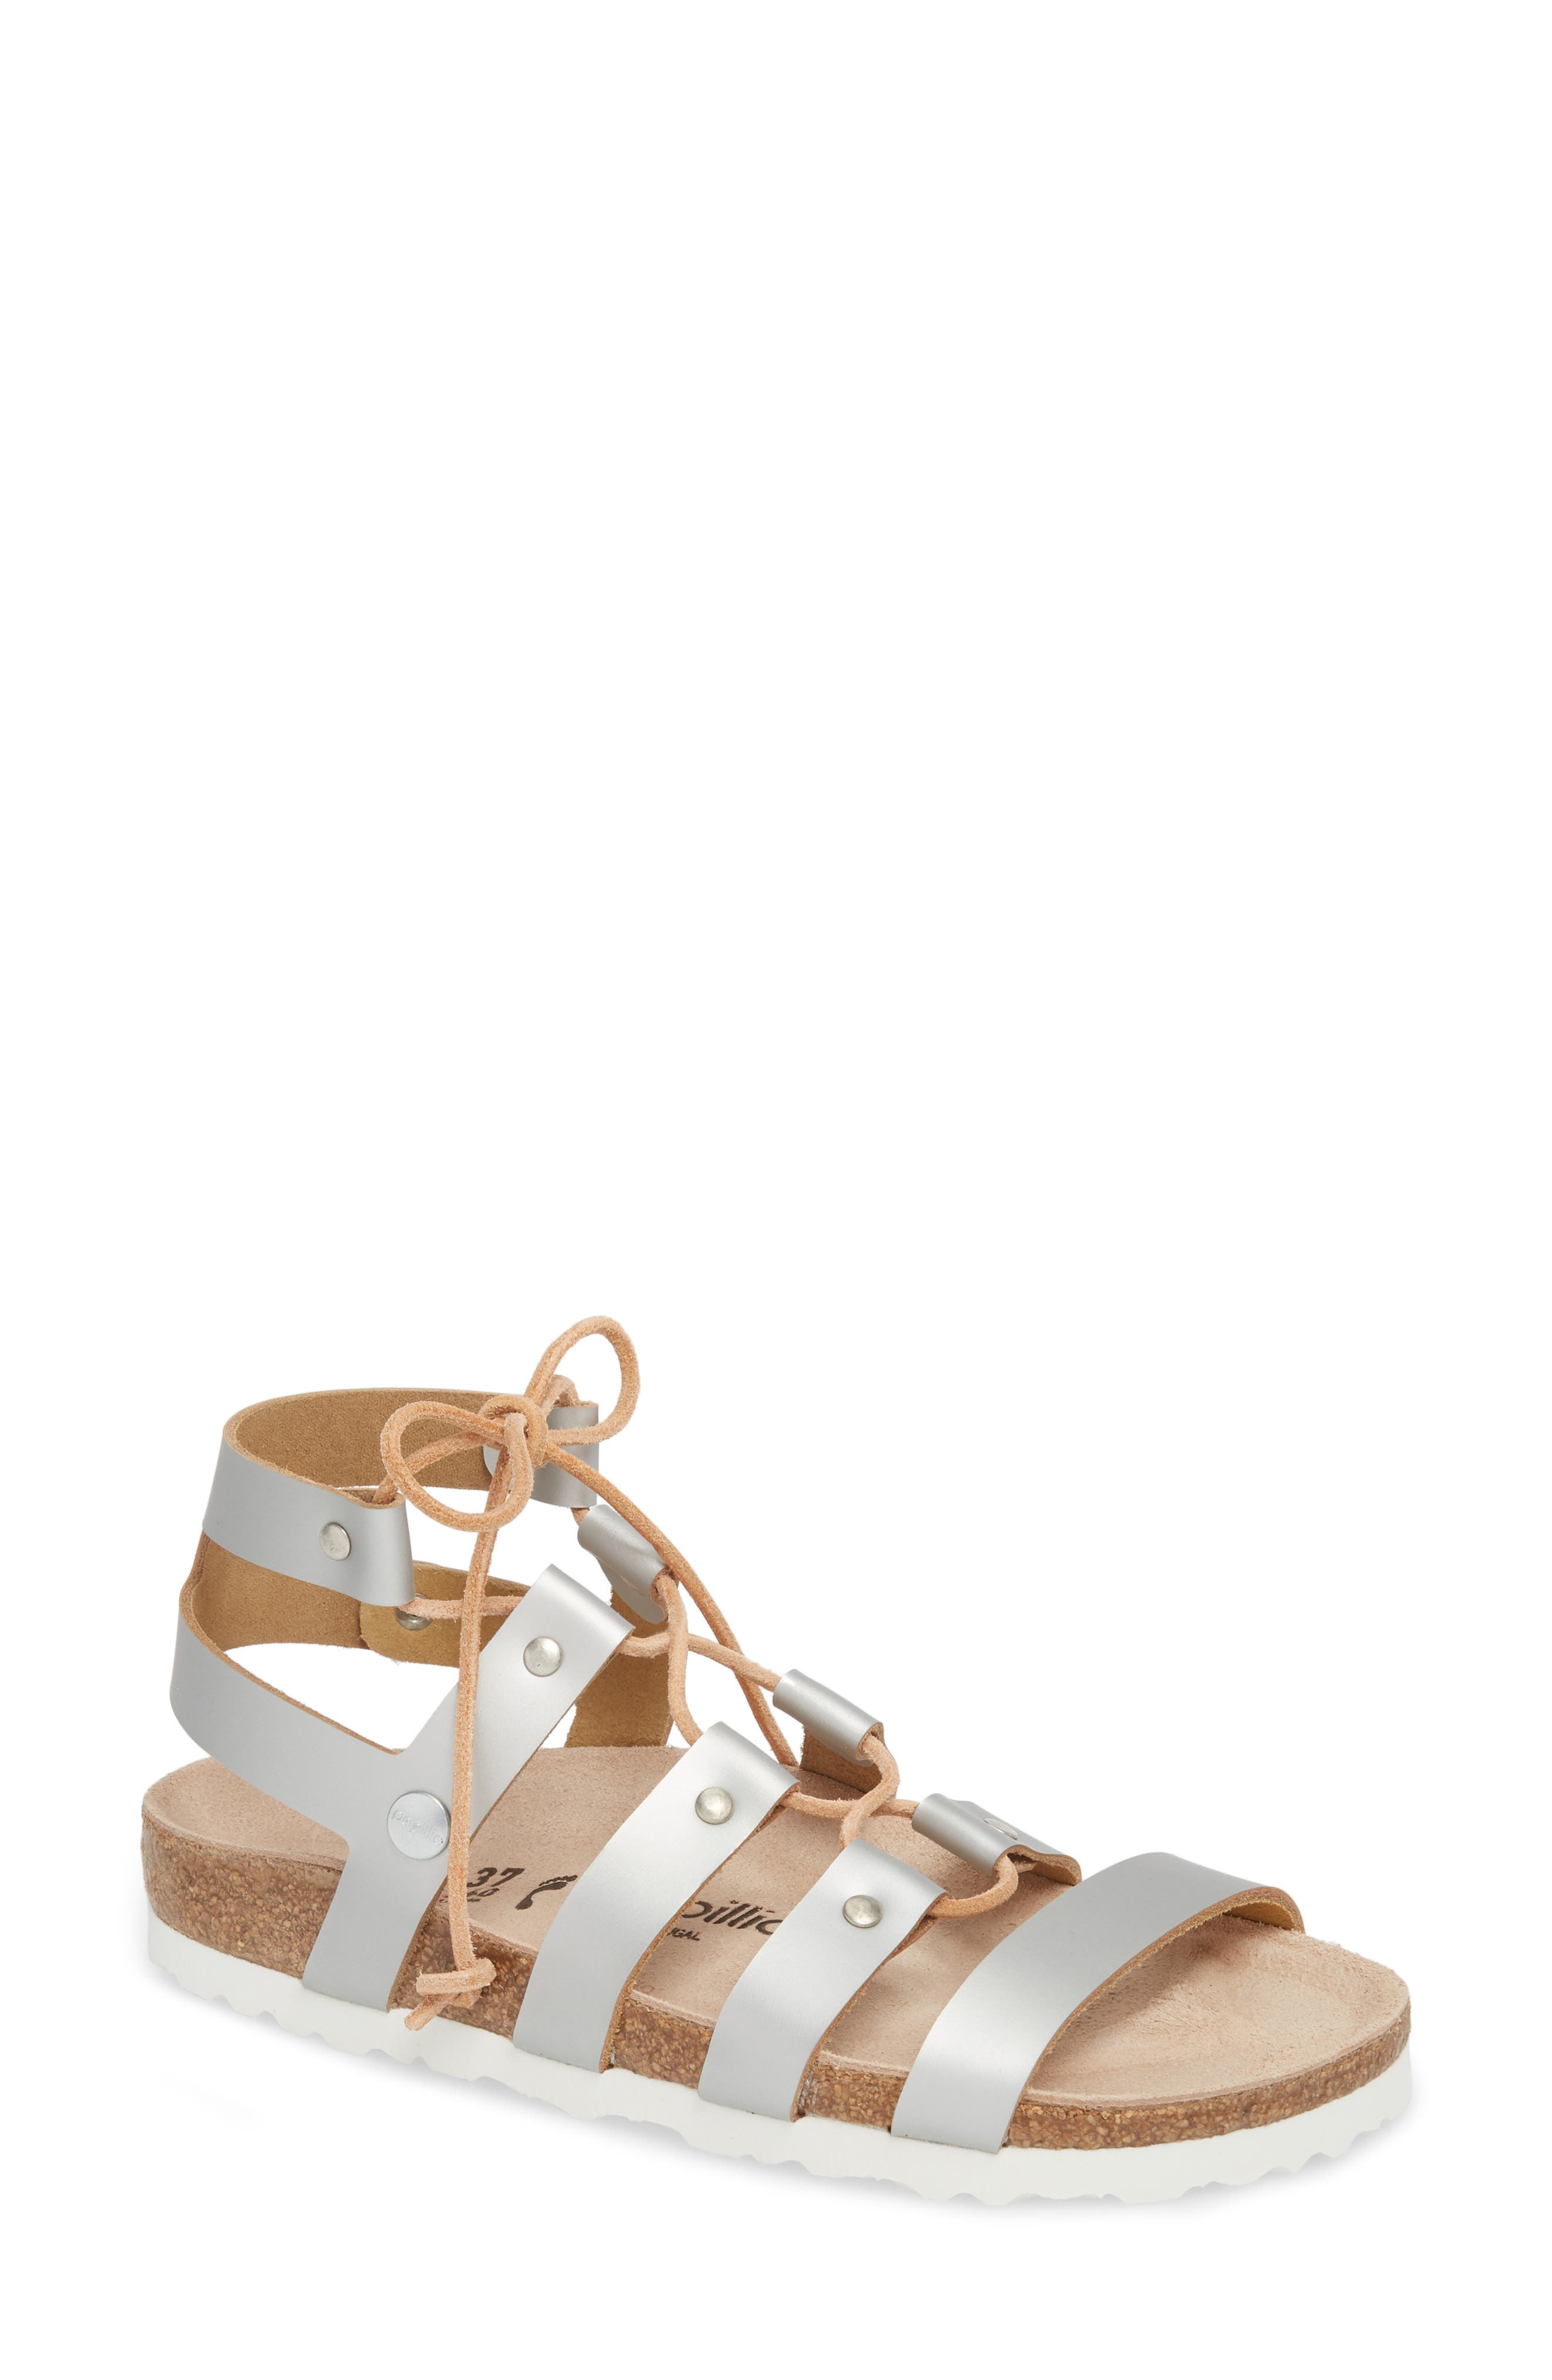 birkenstock cleo gladiator sandal